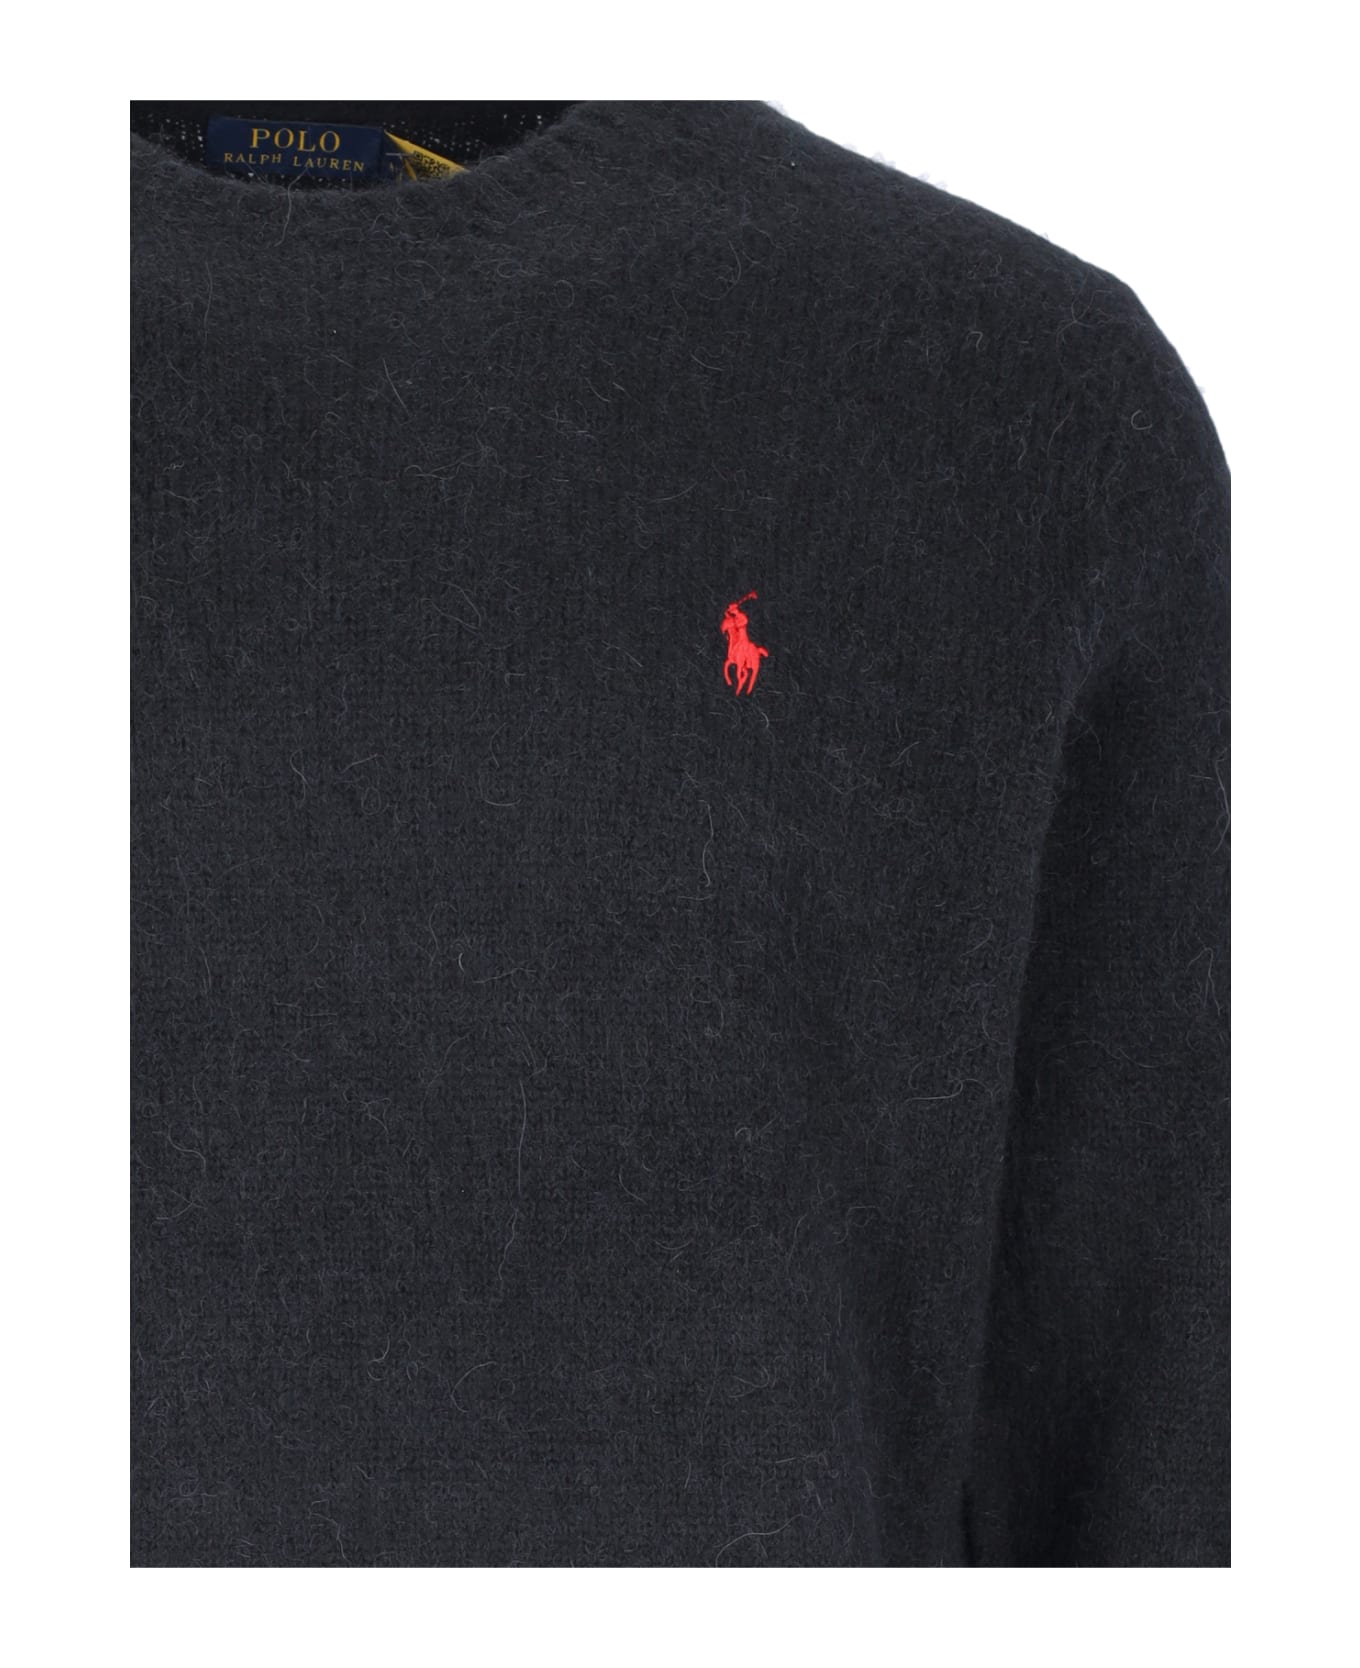 Polo Ralph Lauren Logo Crew Neck Sweater - Black ニットウェア